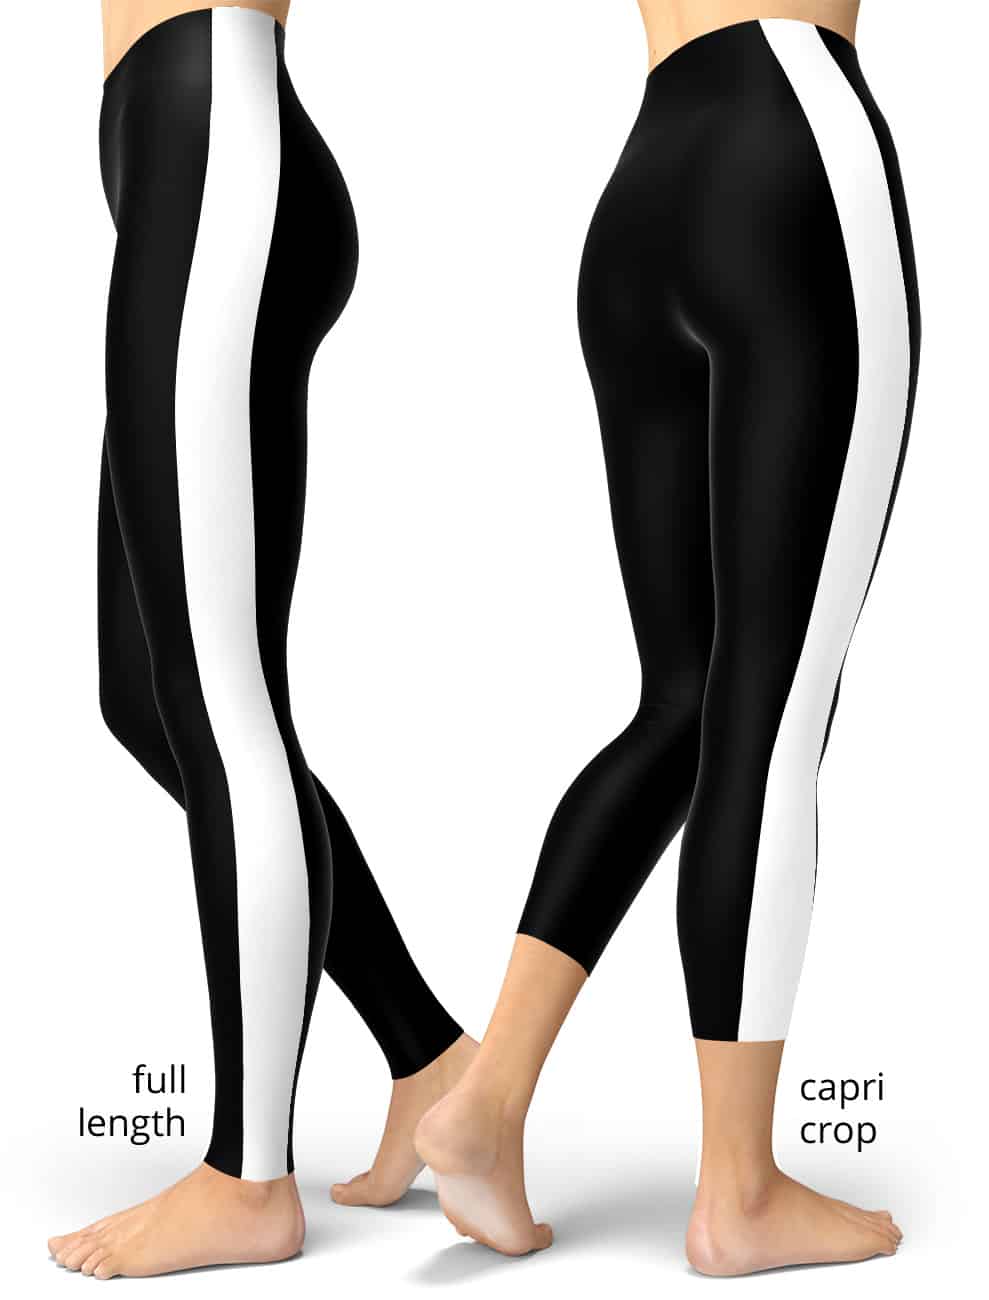 https://squeakychimp.com/wp-content/uploads/2019/04/black-white-side-stripe-leggings-989x1300.jpg